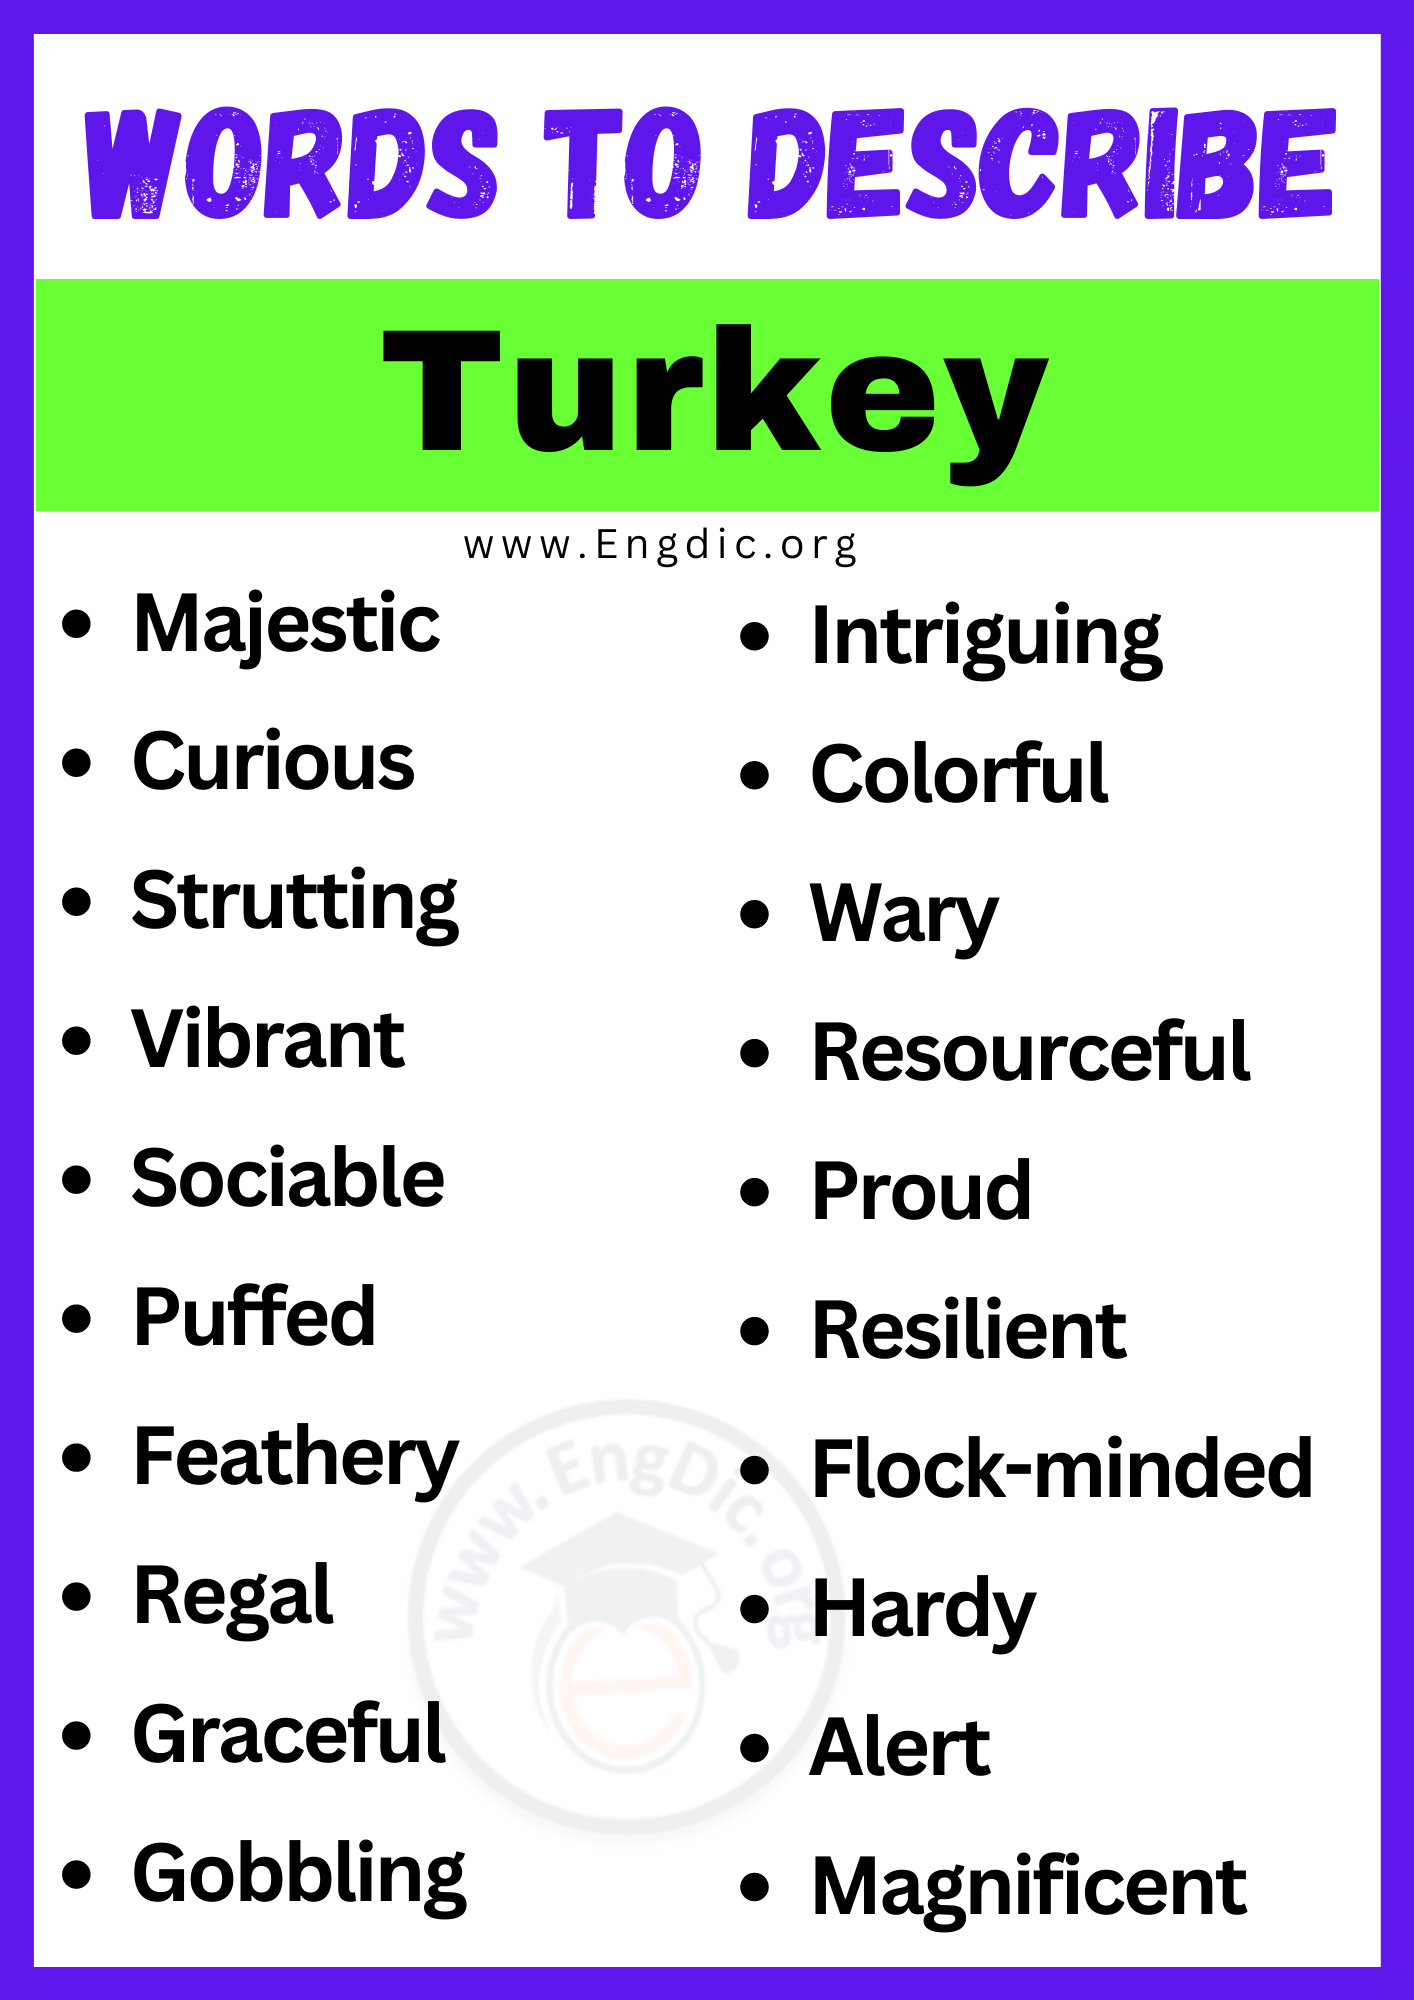 Words to Describe Turkey